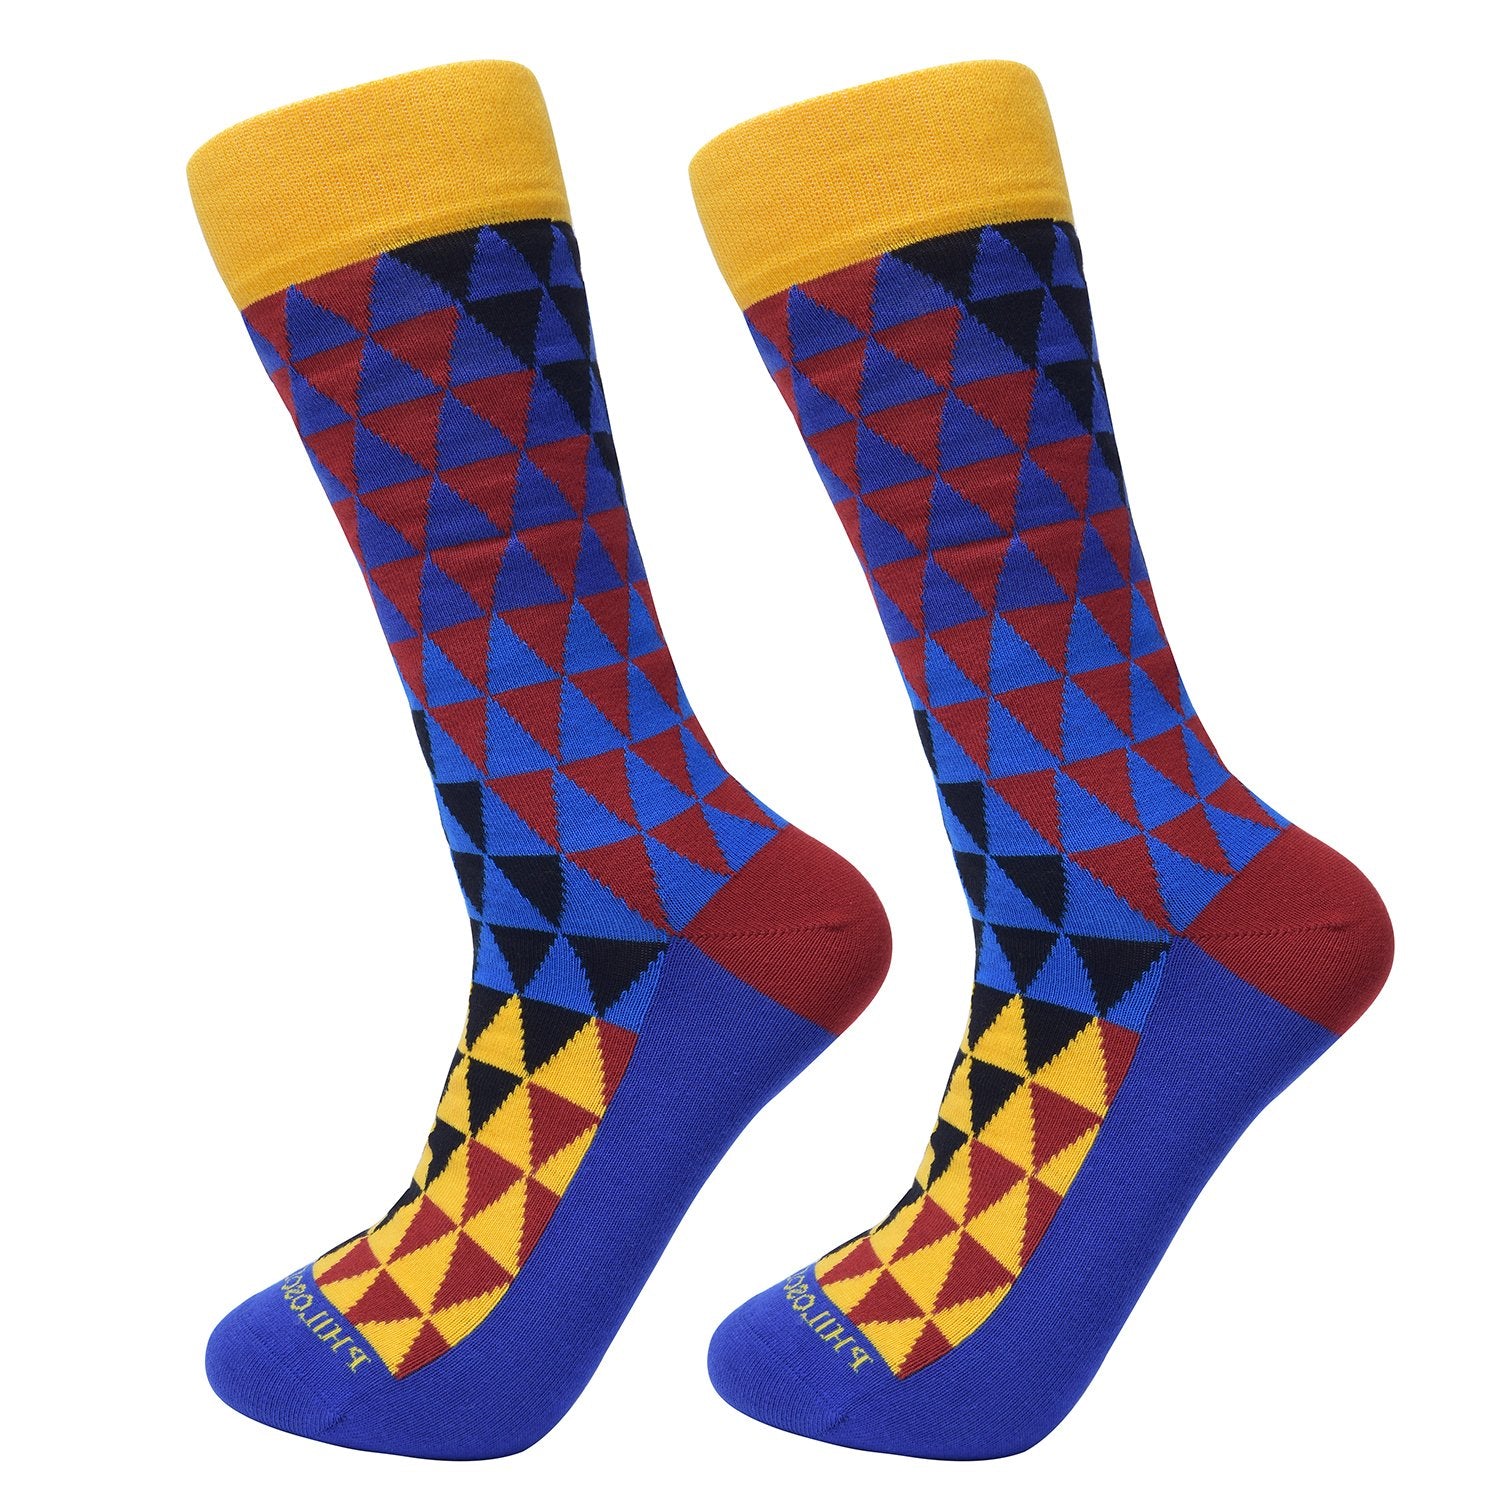 Novelty Socks In Themed Packaging • Showcase